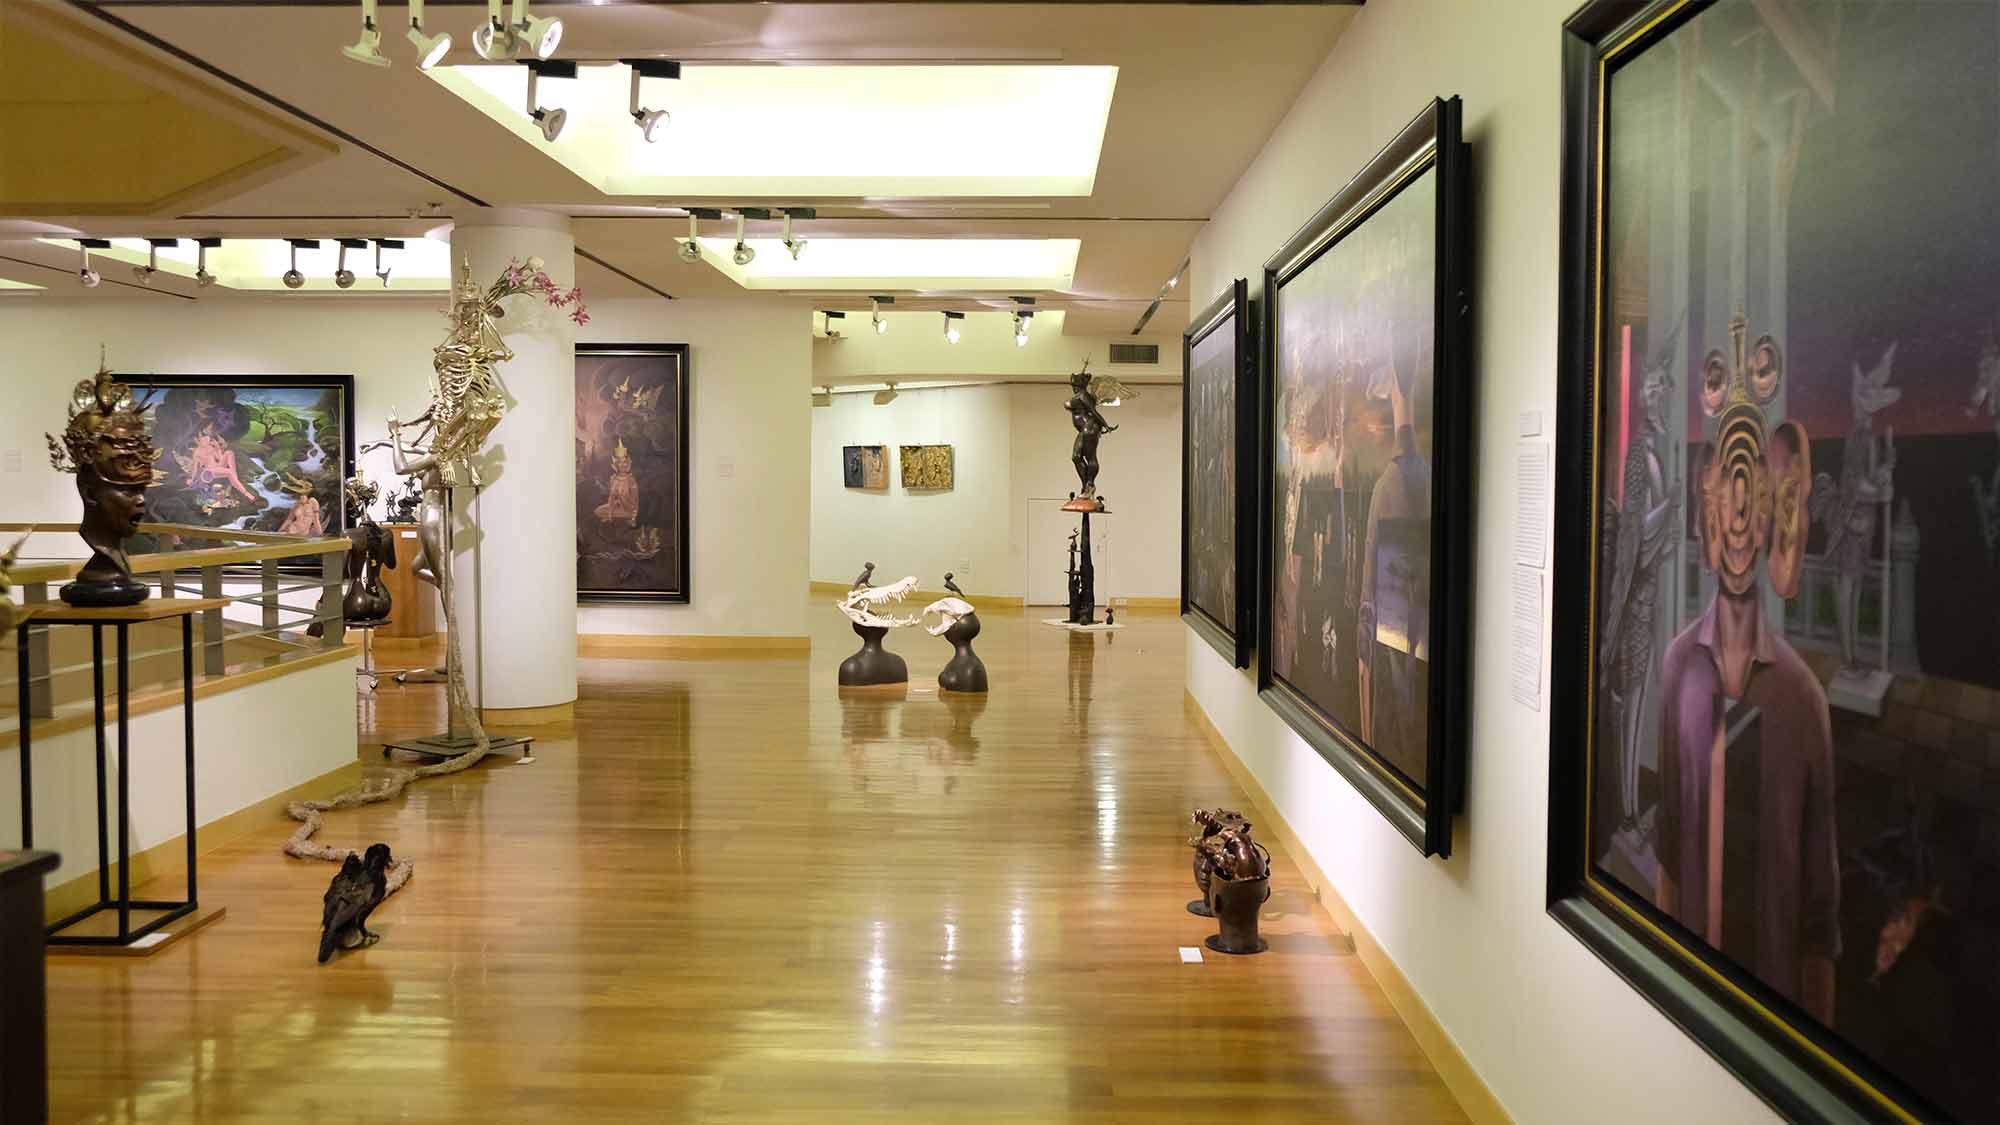 Exhibition The Reflection of Life 36 Years Retrospective By Manop Suwanpinta | นิทรรศการผลงานศิลปกรรม “เงาสะท้อนแห่งชีวิต” ผลงานย้อนหลัง 36 ปี โดย มานพ สุวรรณปินฑะ